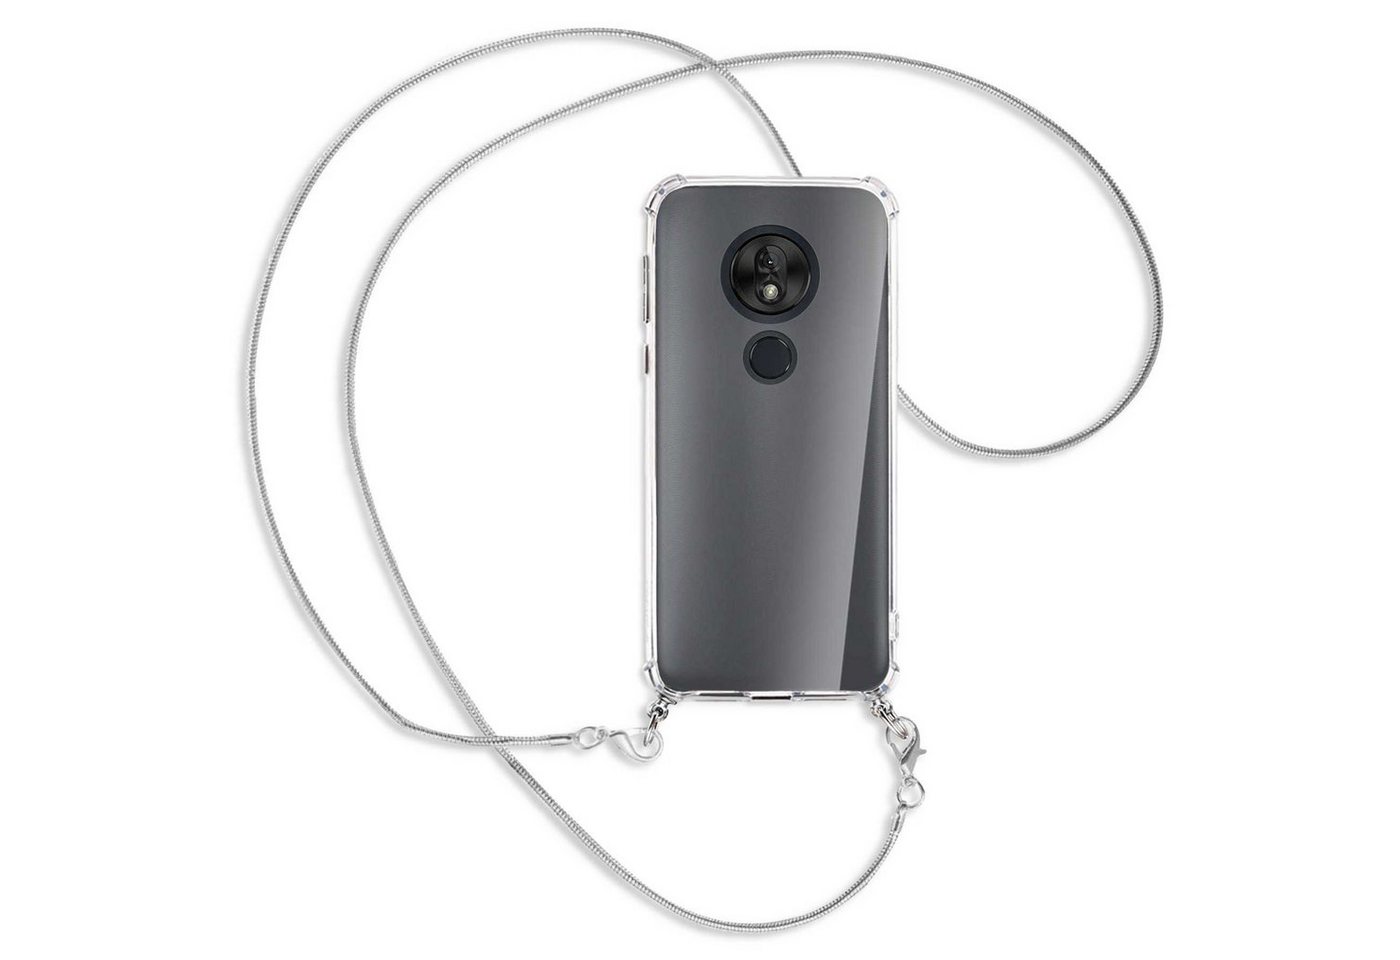 mtb more energy Handykette für Lenovo / Motorola Moto G7 Play (5.7) [MK], Umhängehülle mit Metallkette [NC-147-MK] von mtb more energy